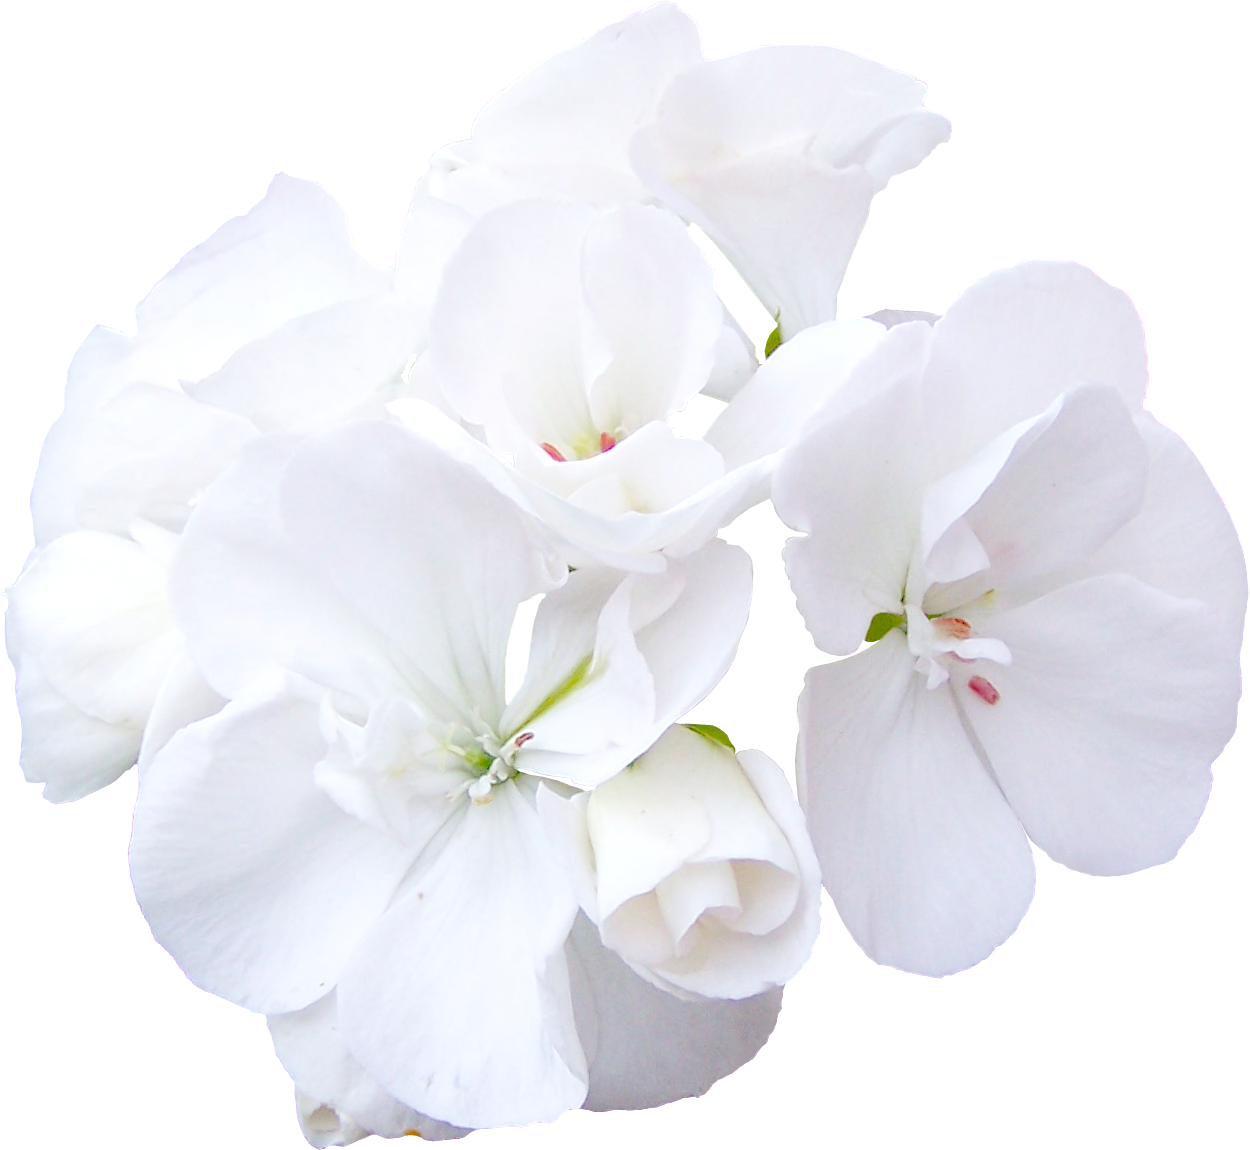 Цветы на белом фоне. Белые цветы на белом фоне. Белые цветы на прозрачном фоне. Прозрачные белые цветы.